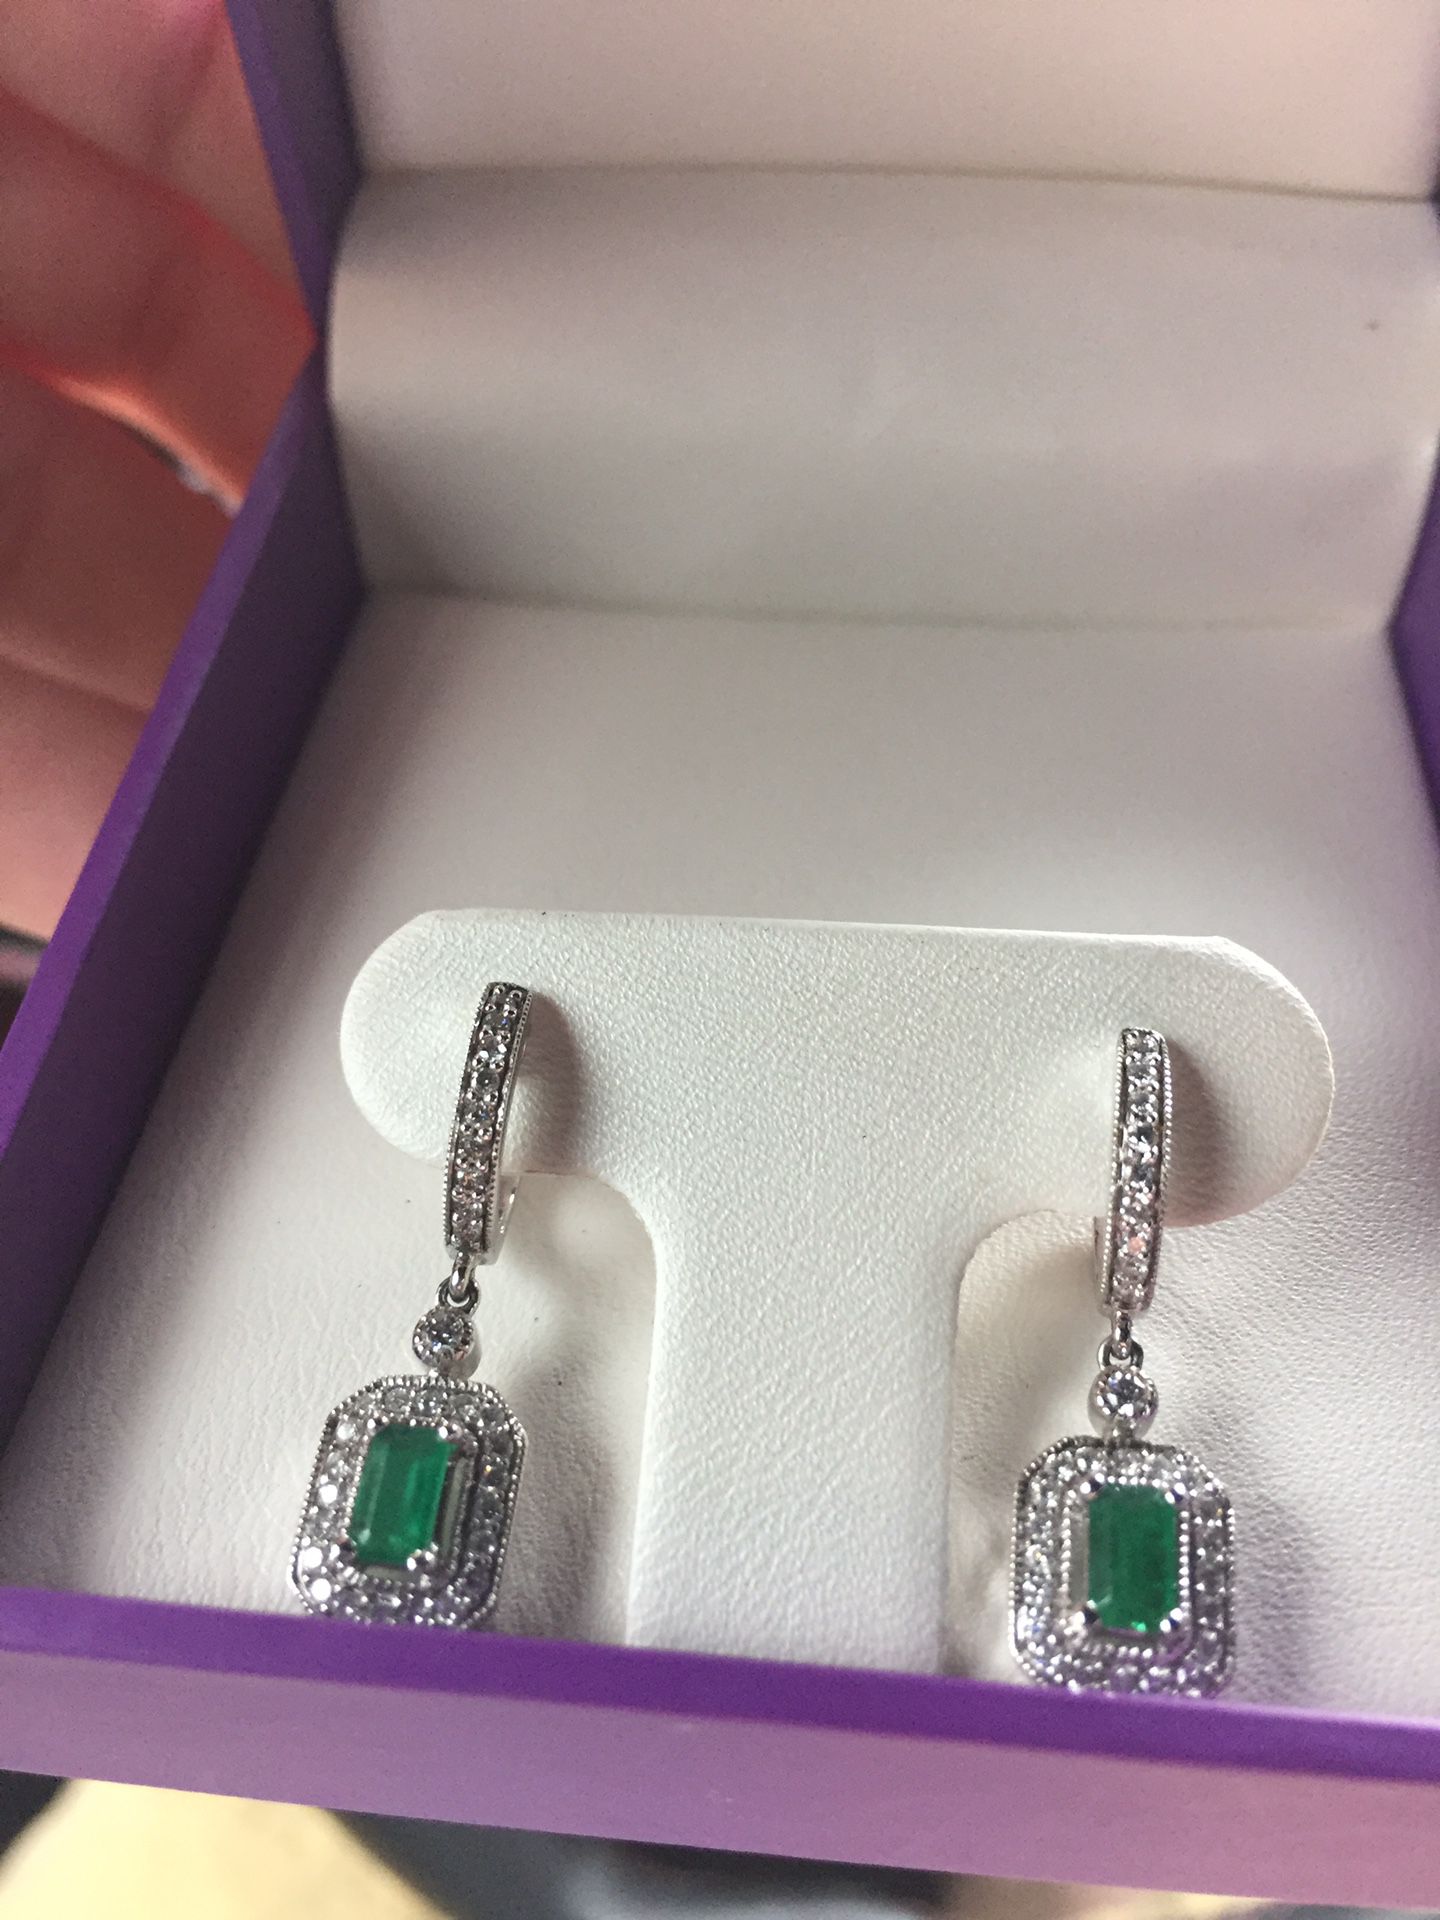 14k emerald diamond earrings w/appraisal.